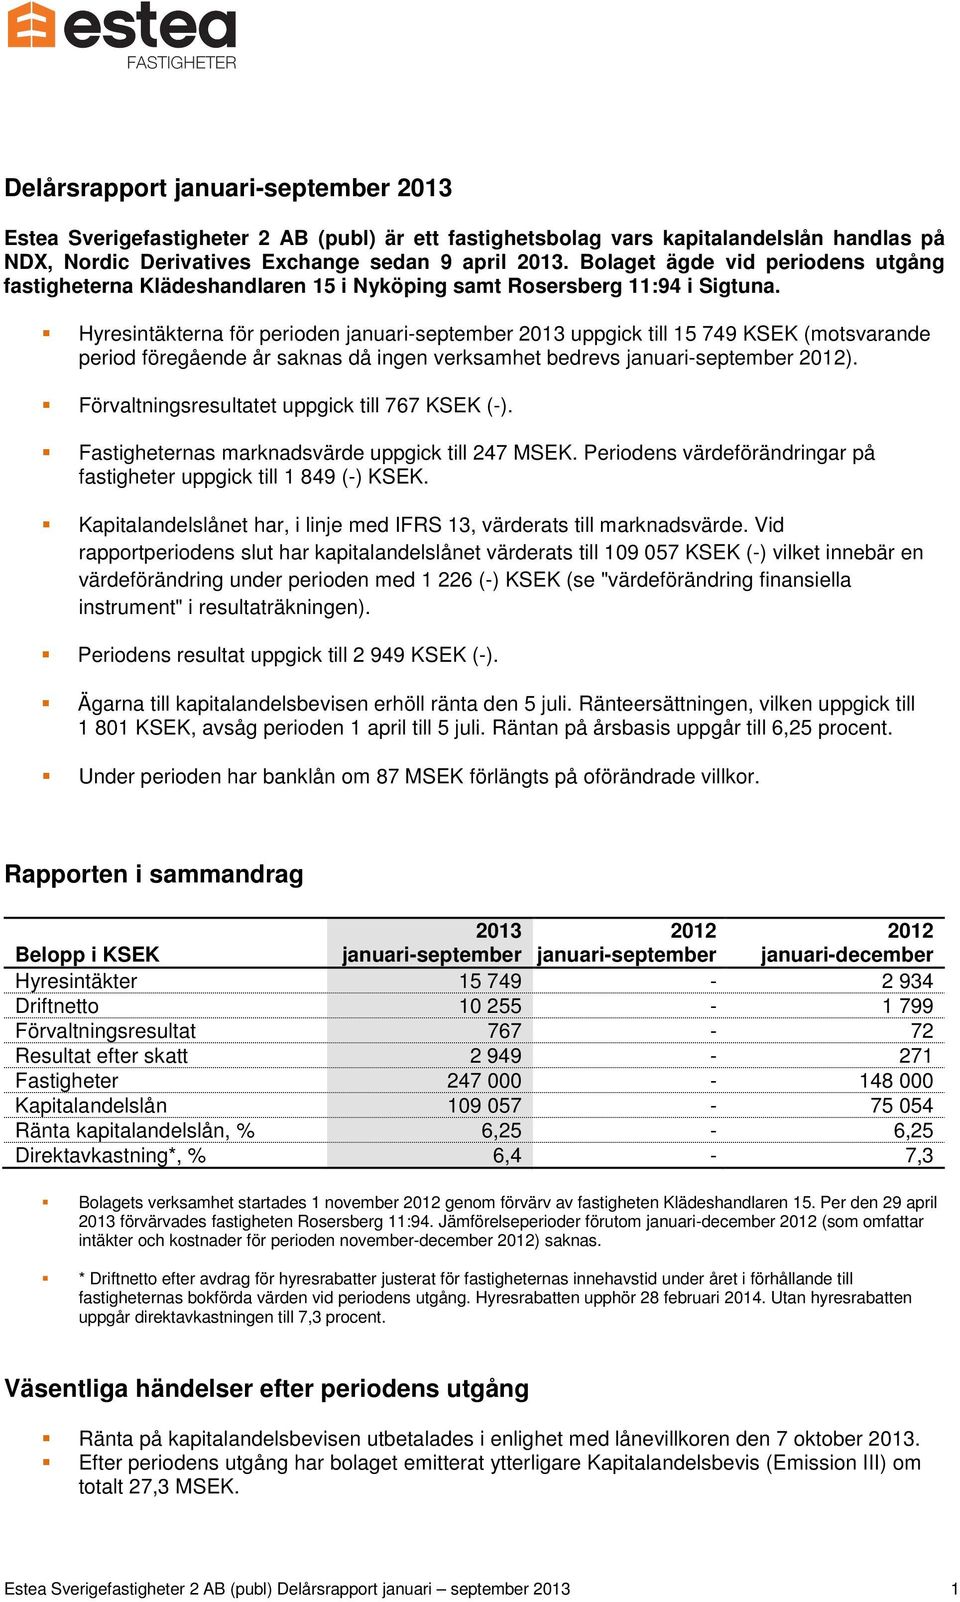 Hyresintäkterna för perioden januari-september 2013 uppgick till 15 749 KSEK (motsvarande period föregående år saknas då ingen verksamhet bedrevs januari-september 2012).